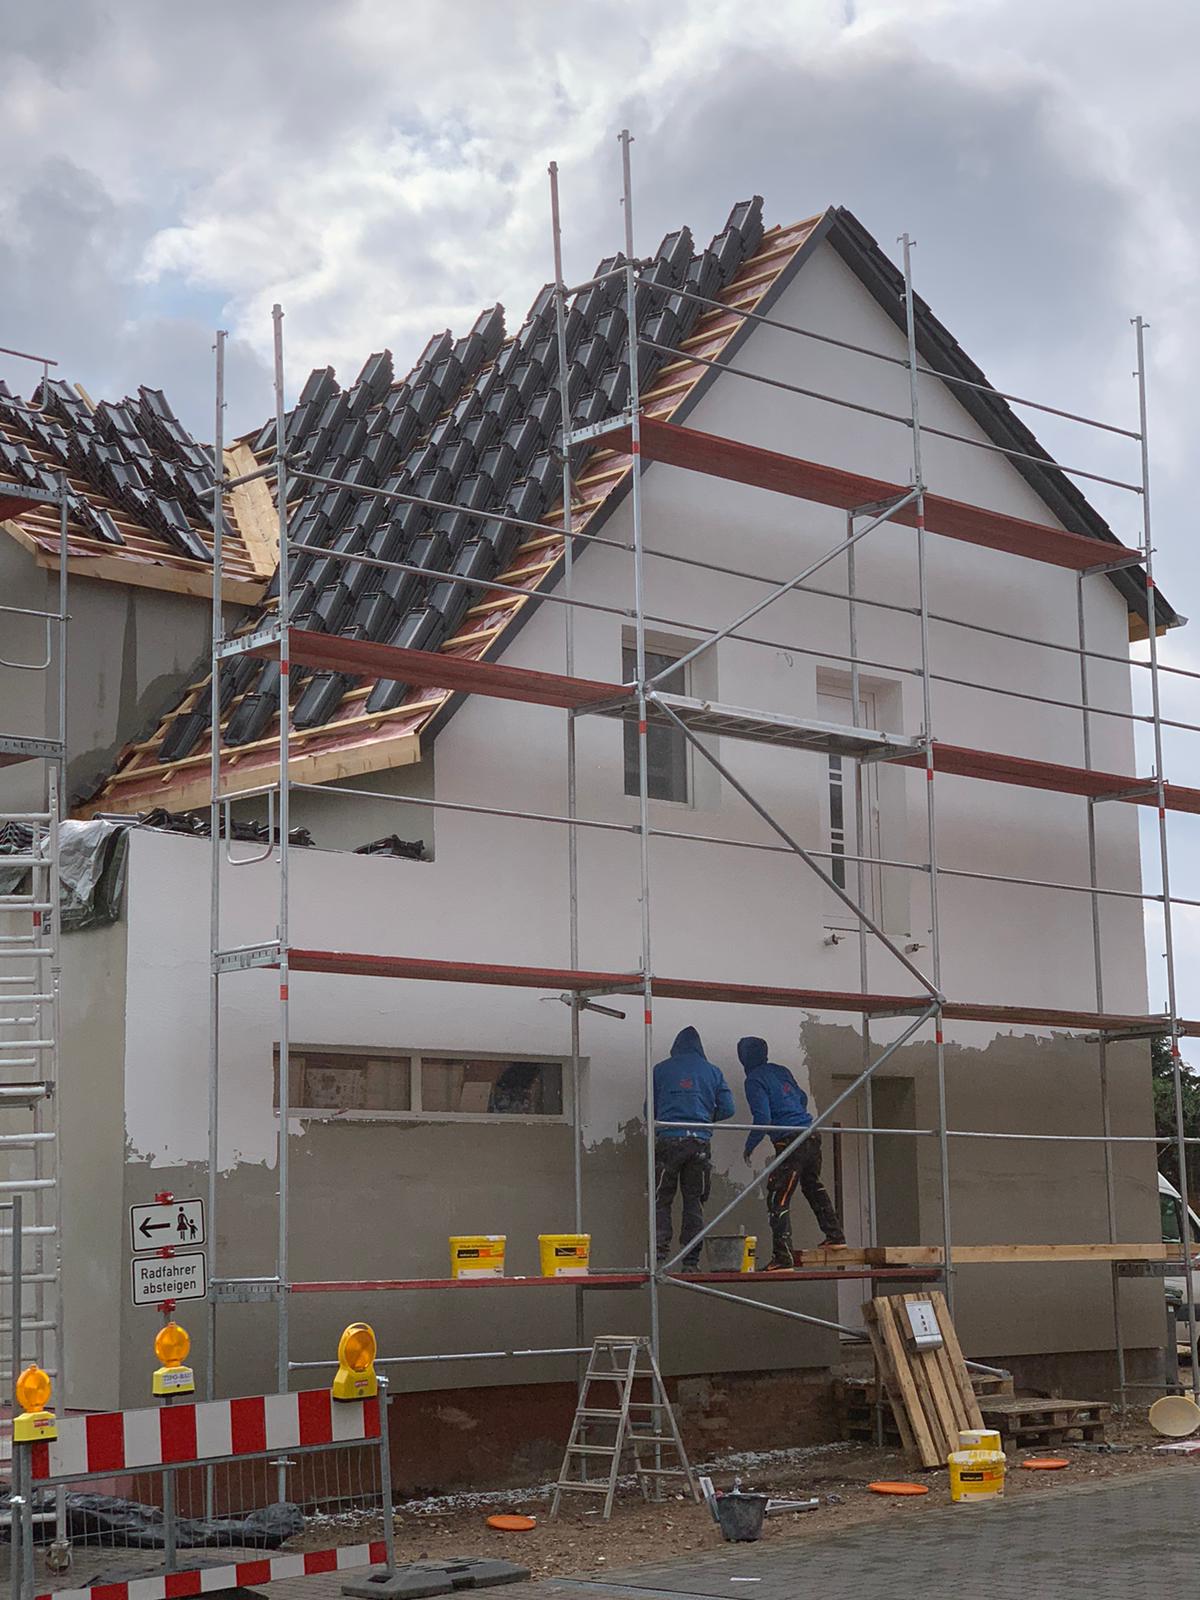 Sanierung - gebaut mit Root Hausbau - Neubau und Sanierung im Heidekreis und Umgebung Hamburg, Hannover und Bremen